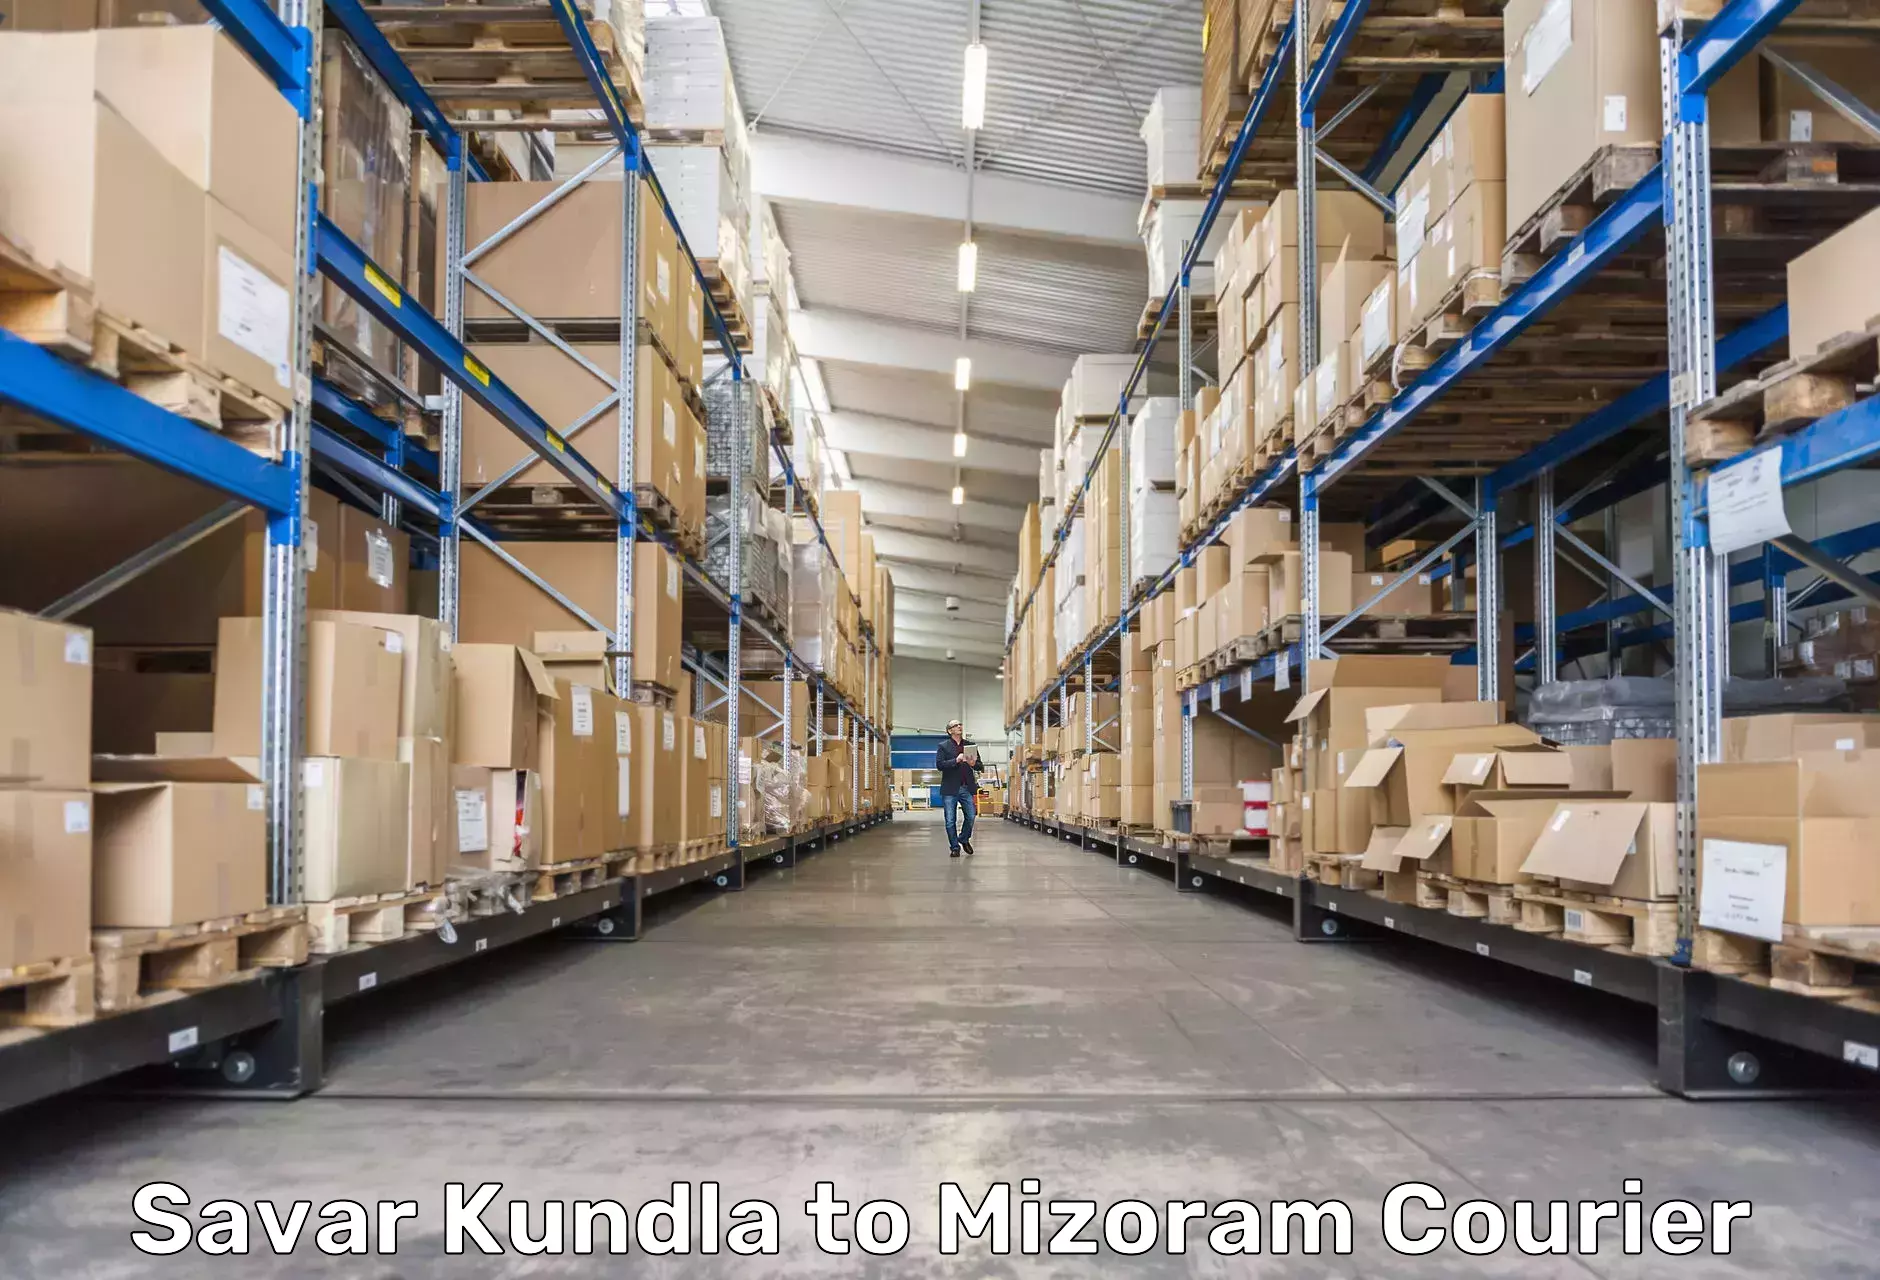 Nationwide shipping coverage Savar Kundla to Mizoram